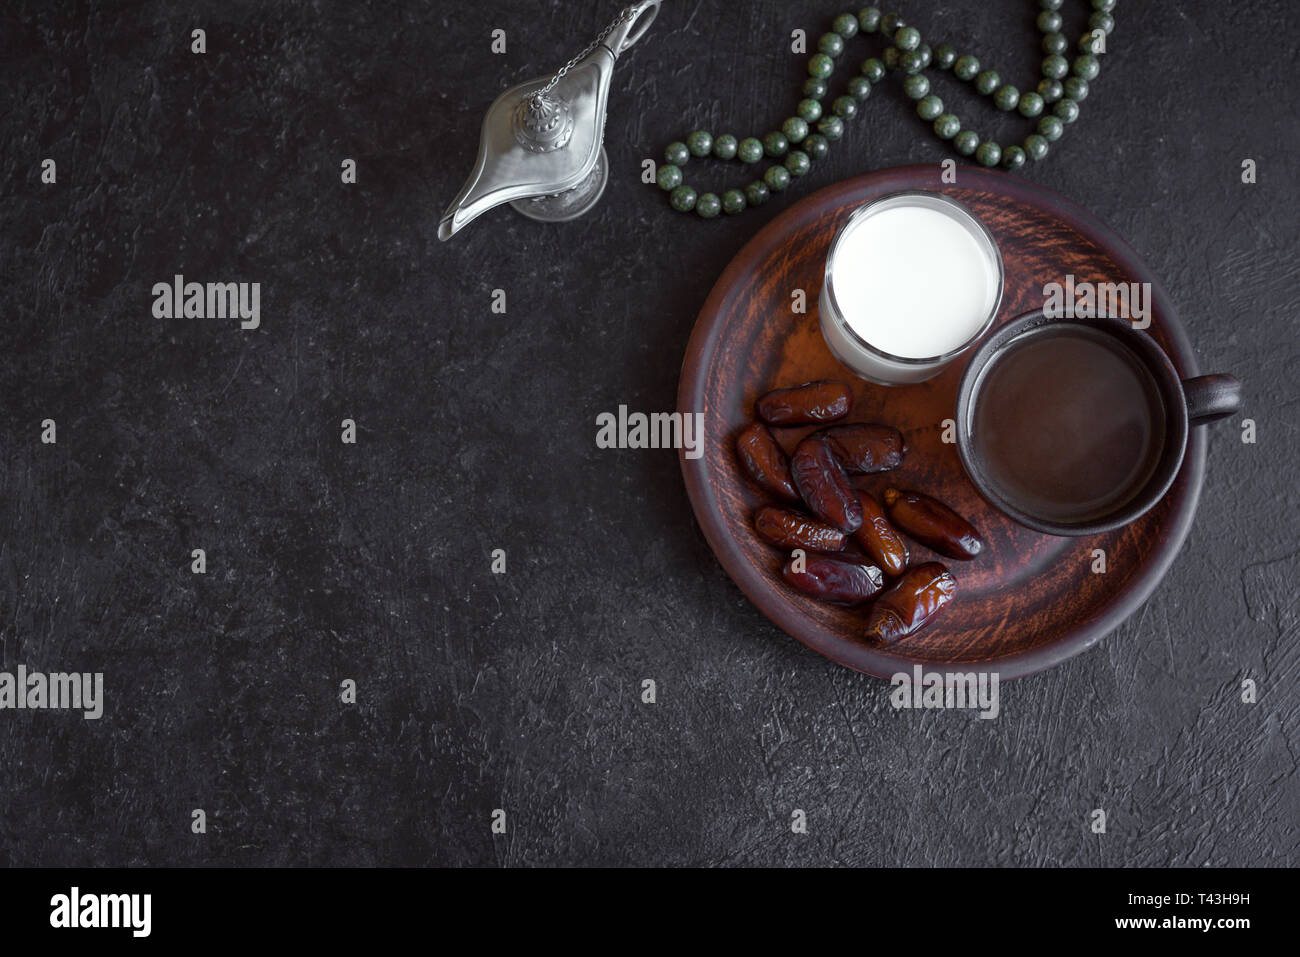 Traditionelle muslimische Iftar Essen auf Schwarz, kopieren. Ramadan Kareem mit Terminen, Milch und Kaffee. Ramadan iftar Essen Konzept mit Rosenkranz. Stockfoto